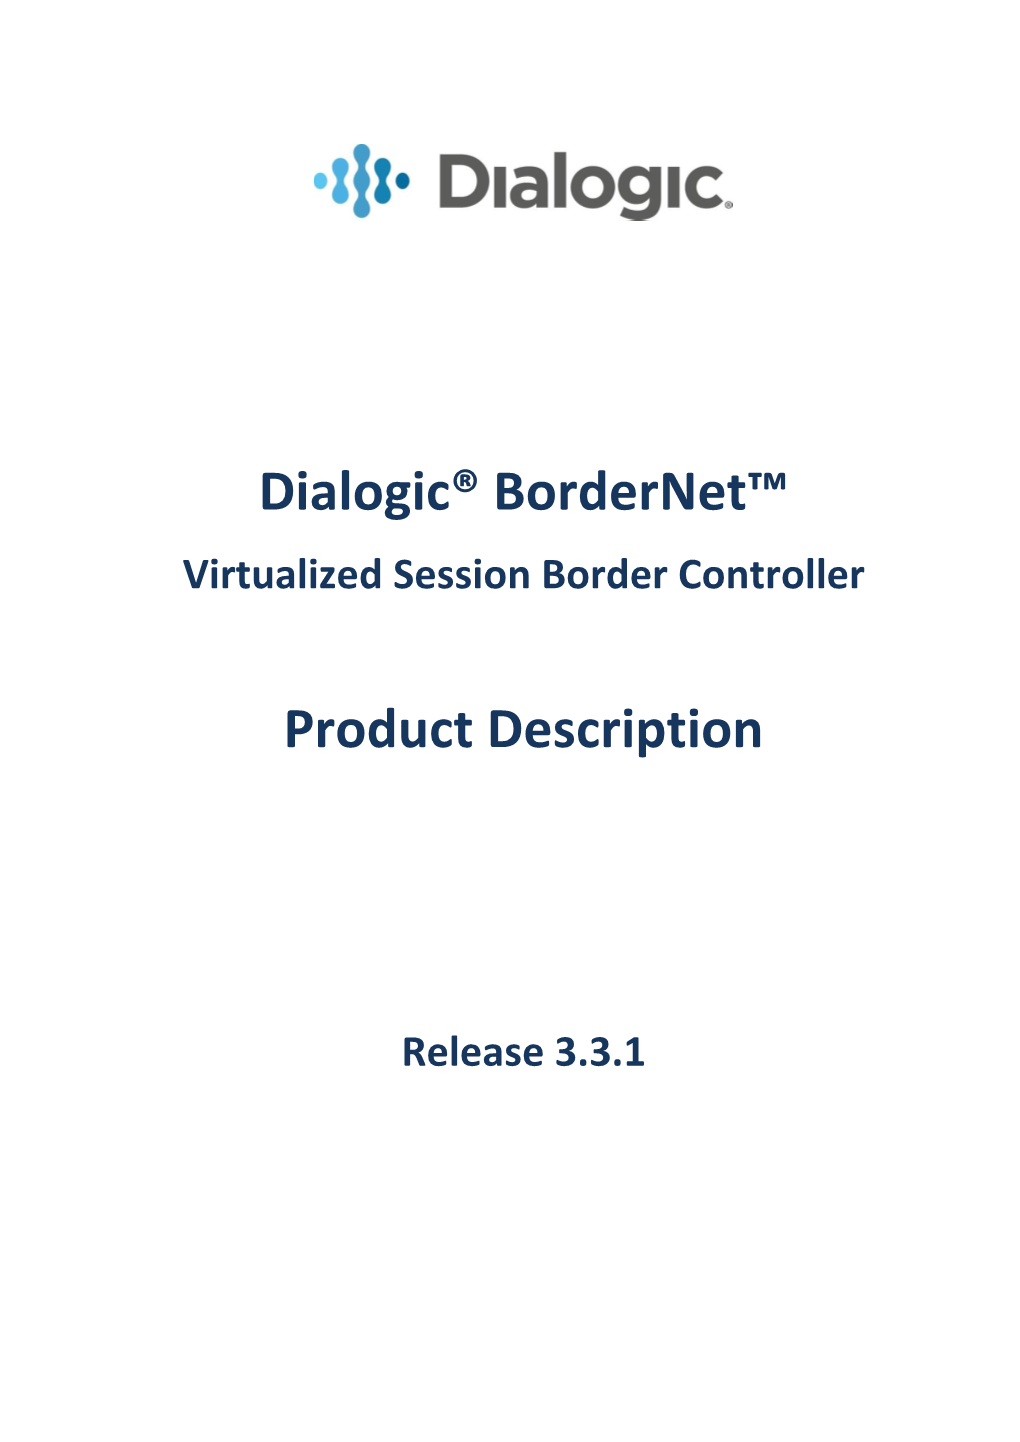 Dialogic® Bordernet™ Product Description